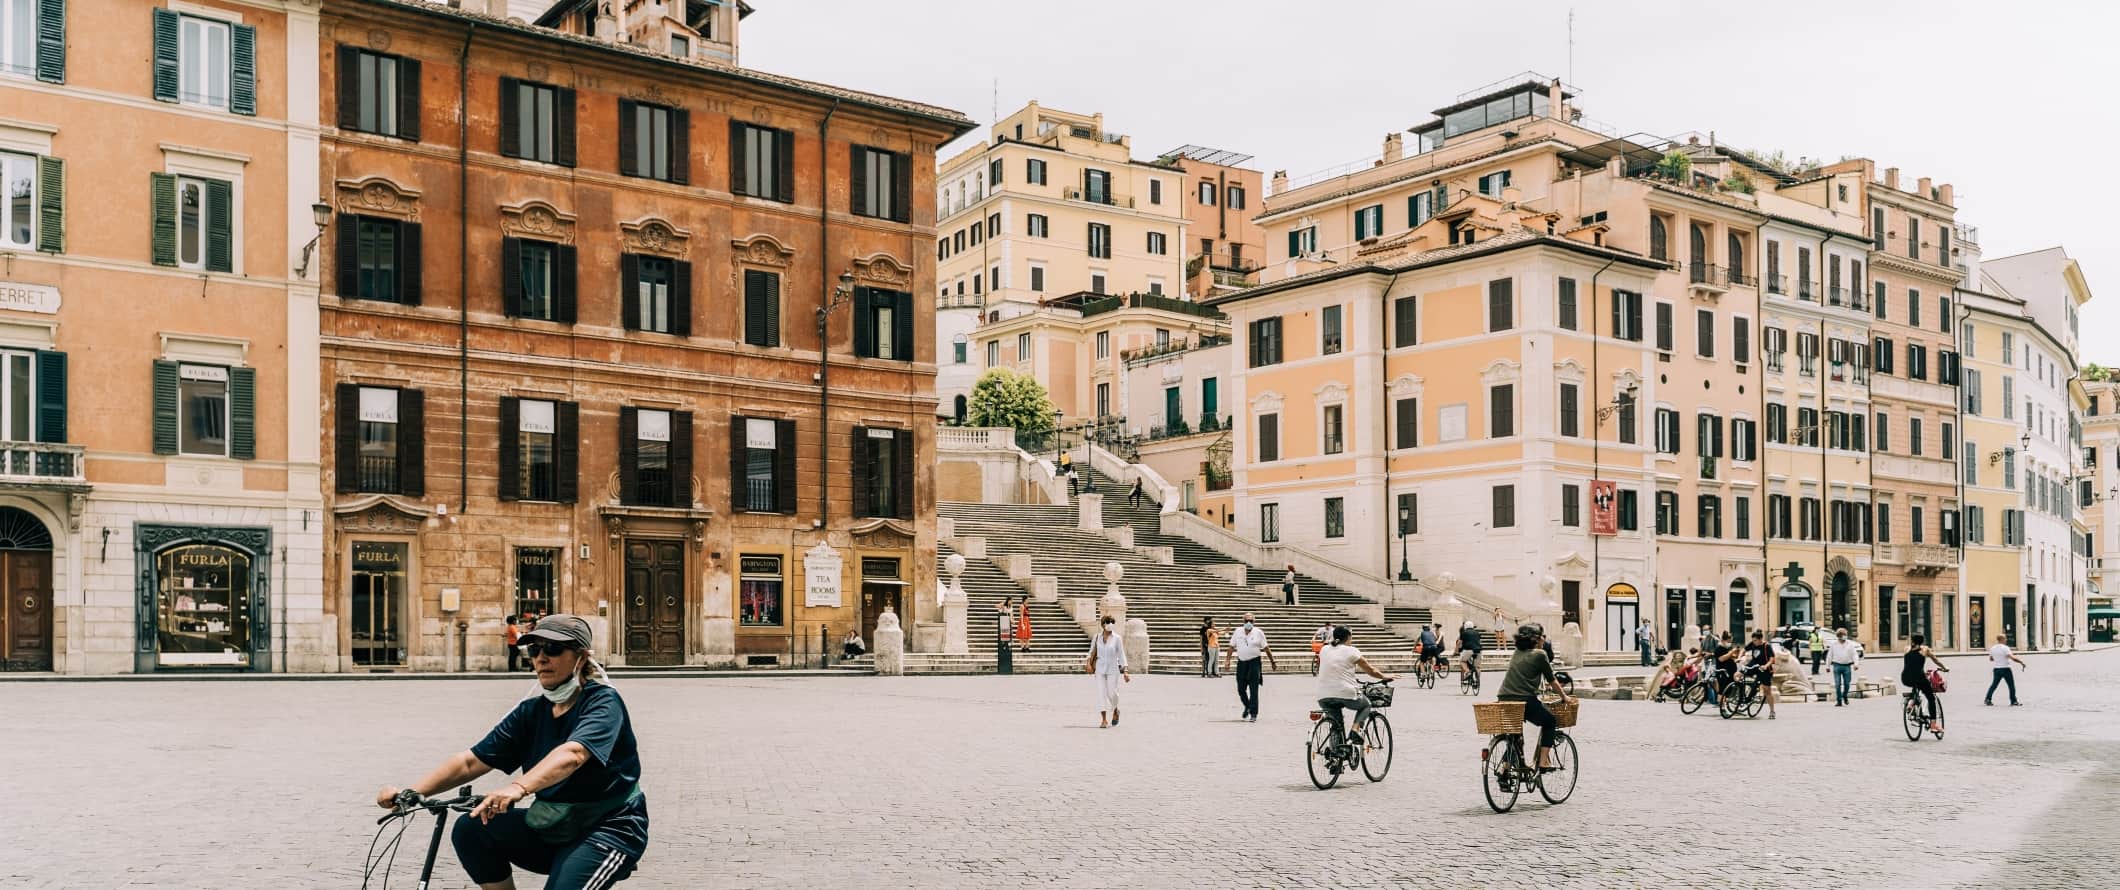 人们在意大利罗马的街道上骑自行车